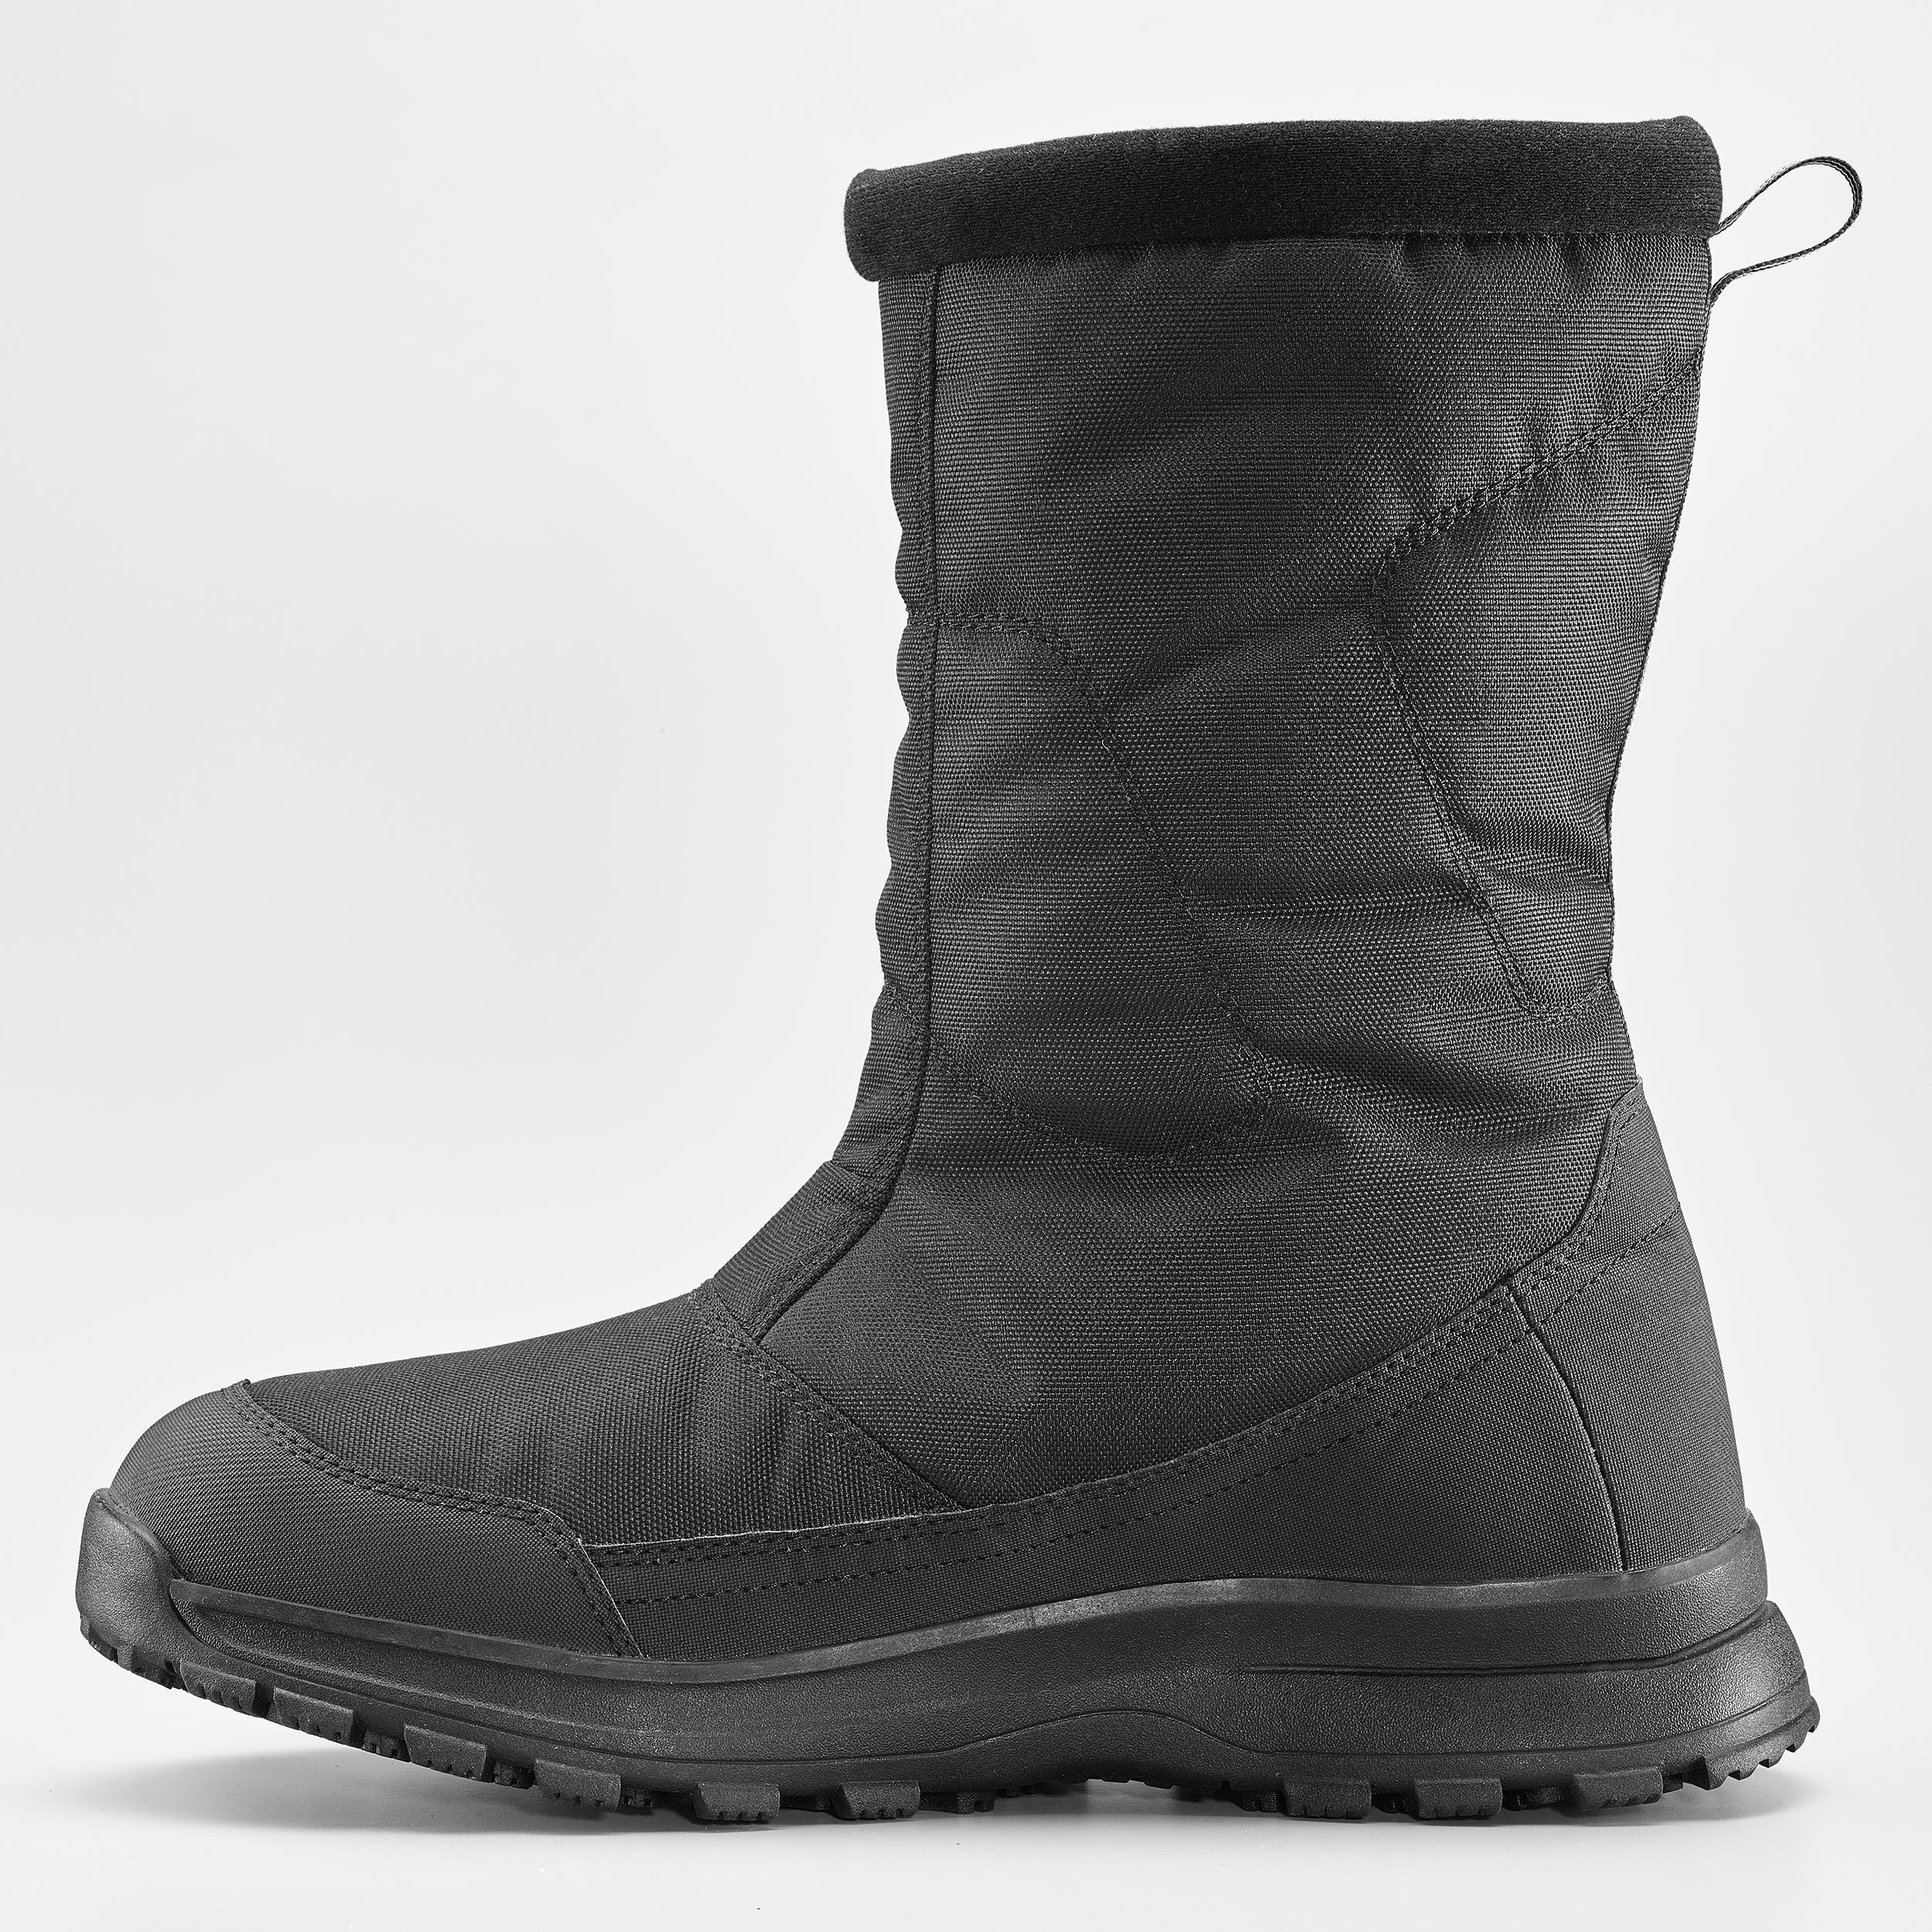 Men's warm waterproof snow hiking boots  - SH100 Zip 3/4